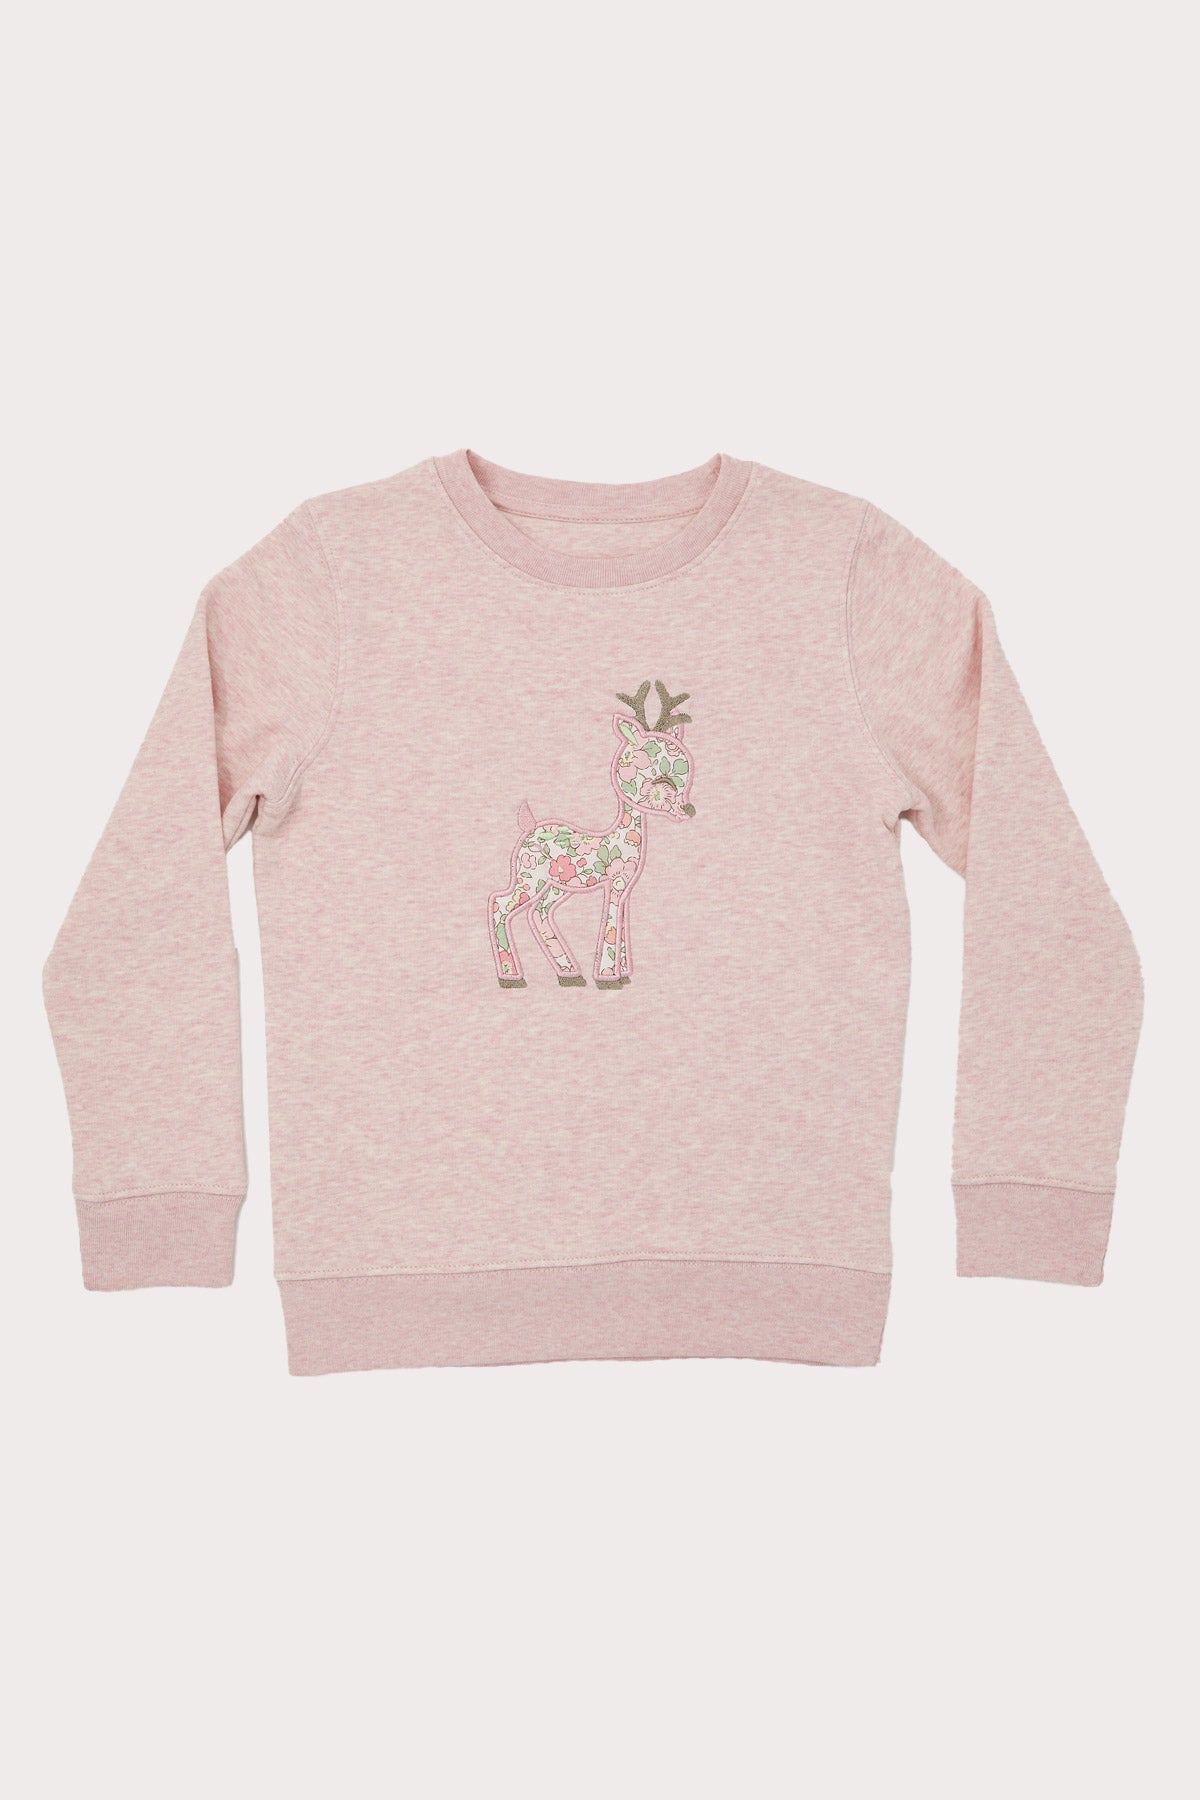 Luxury Liberty of London Organic Cotton Baby Deer Personalised Sweatshirt (3Y - 11Y)